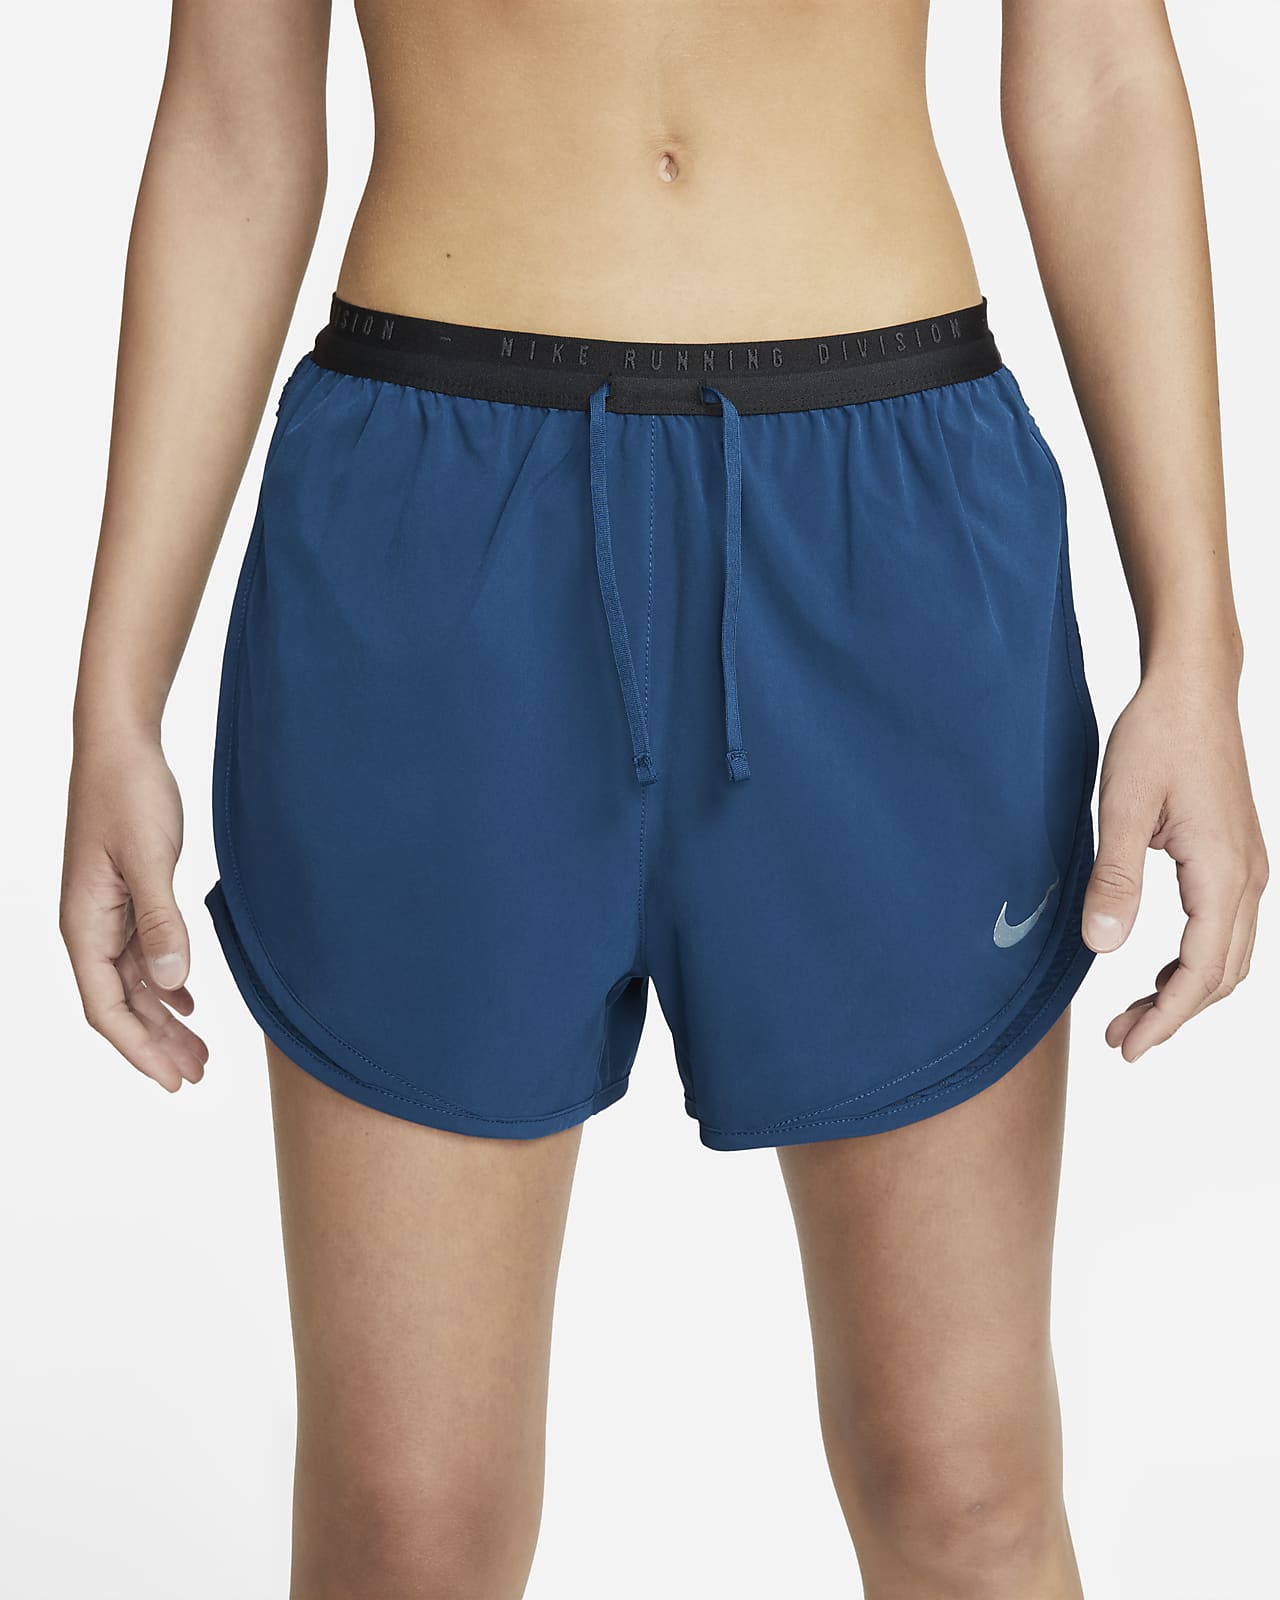 Nike Girls Dry Tempo Running Short Lacrosse Bottoms